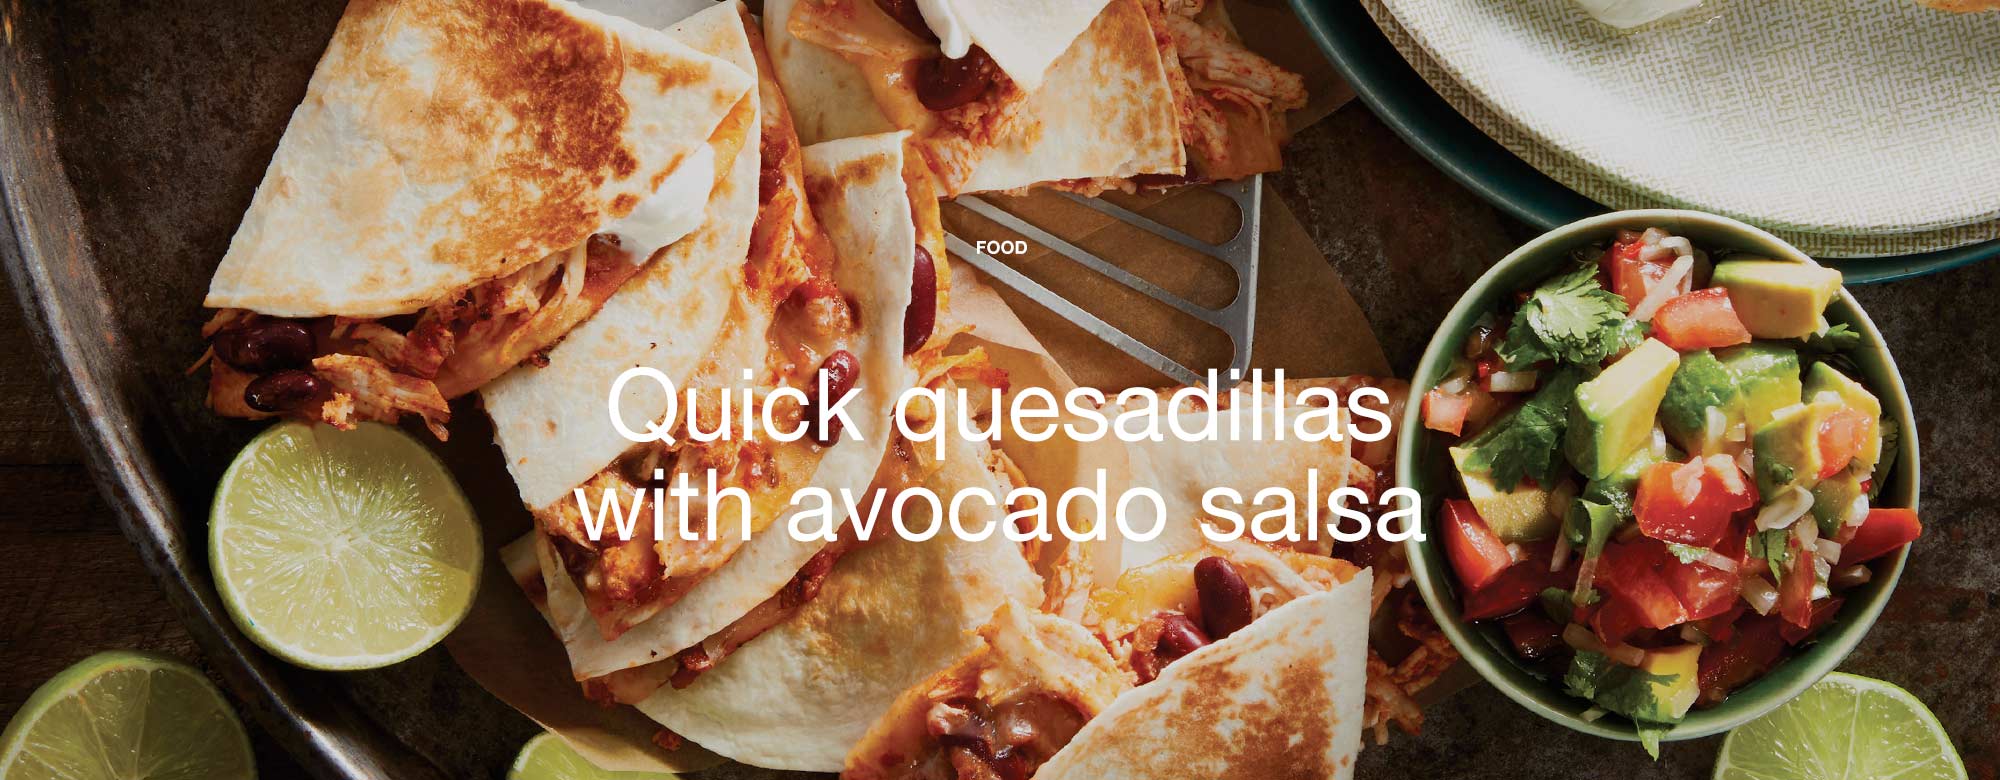 Quick quesadillas with avocado salsa